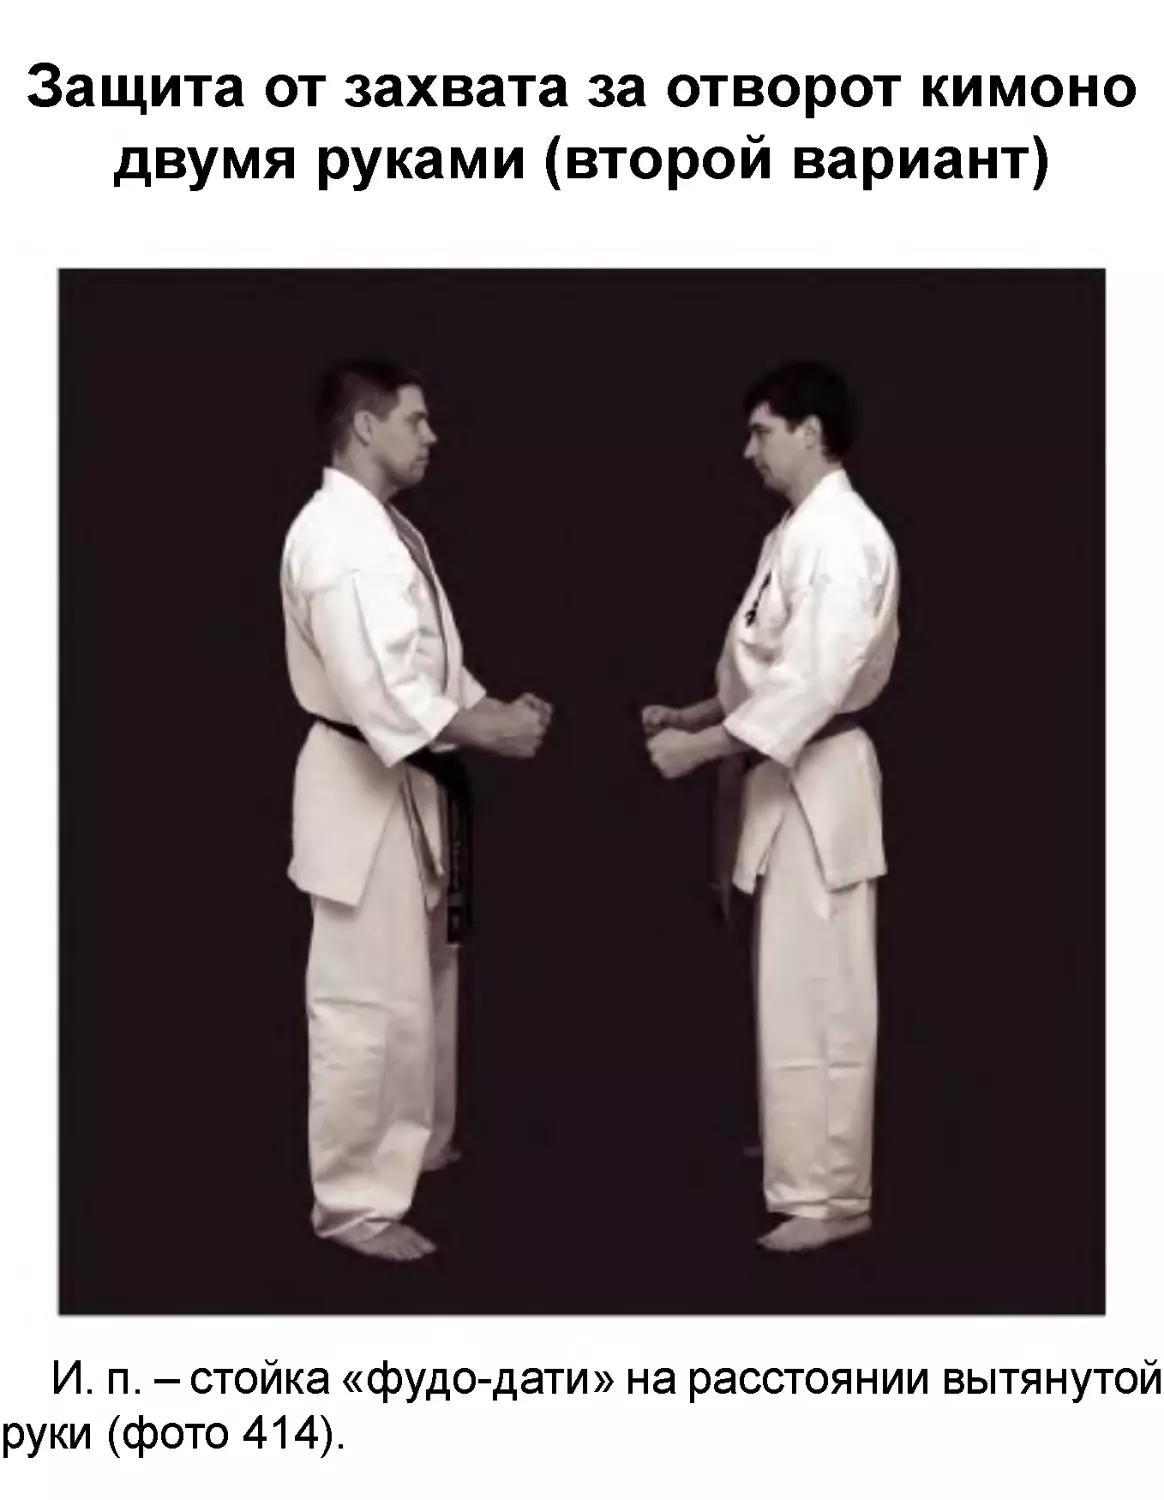 ﻿Защита от захвата за отворот кимоно двумя руками øвторой вариант